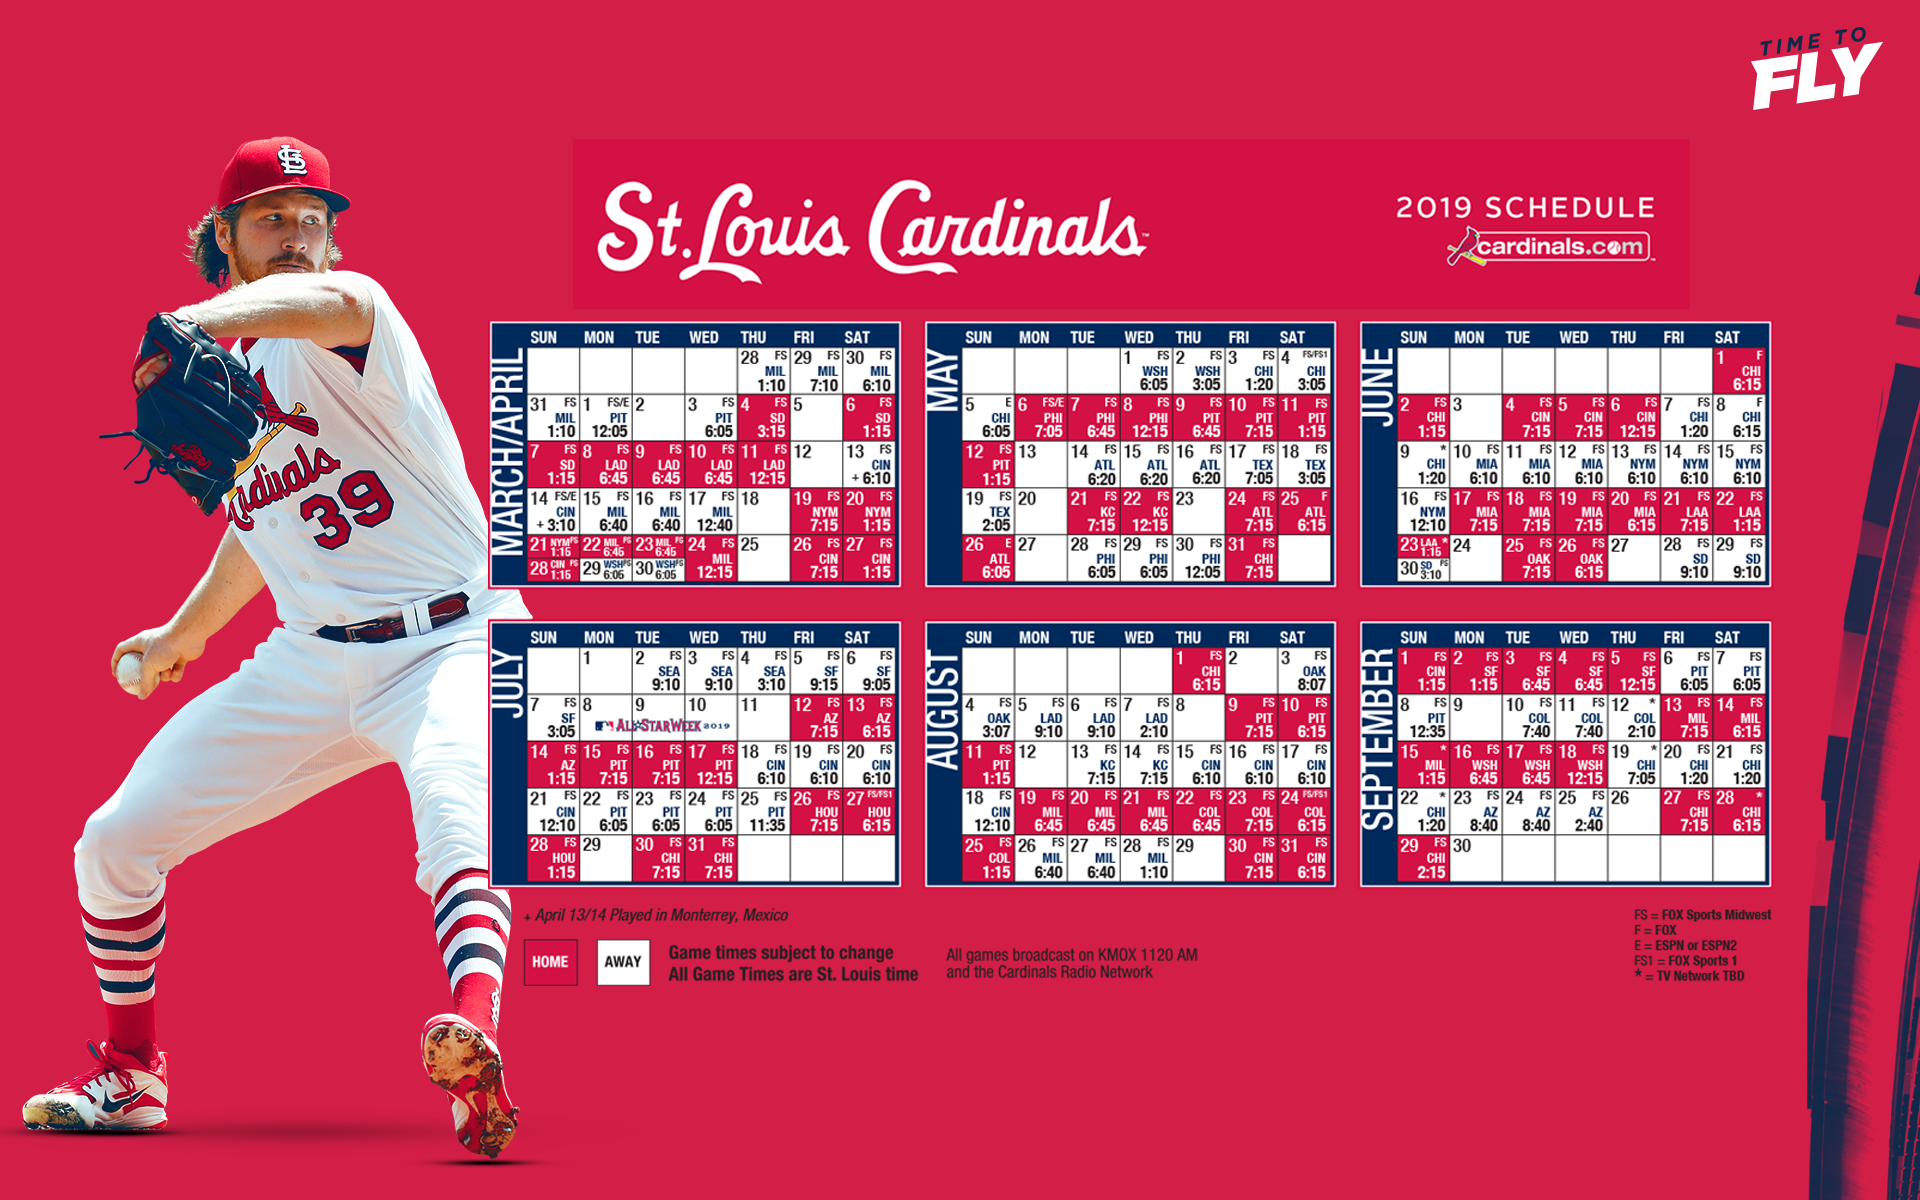 St Louis Cardinals Schedule 2019 - 1920x1200 Wallpaper - www.paulmartinsmith.com